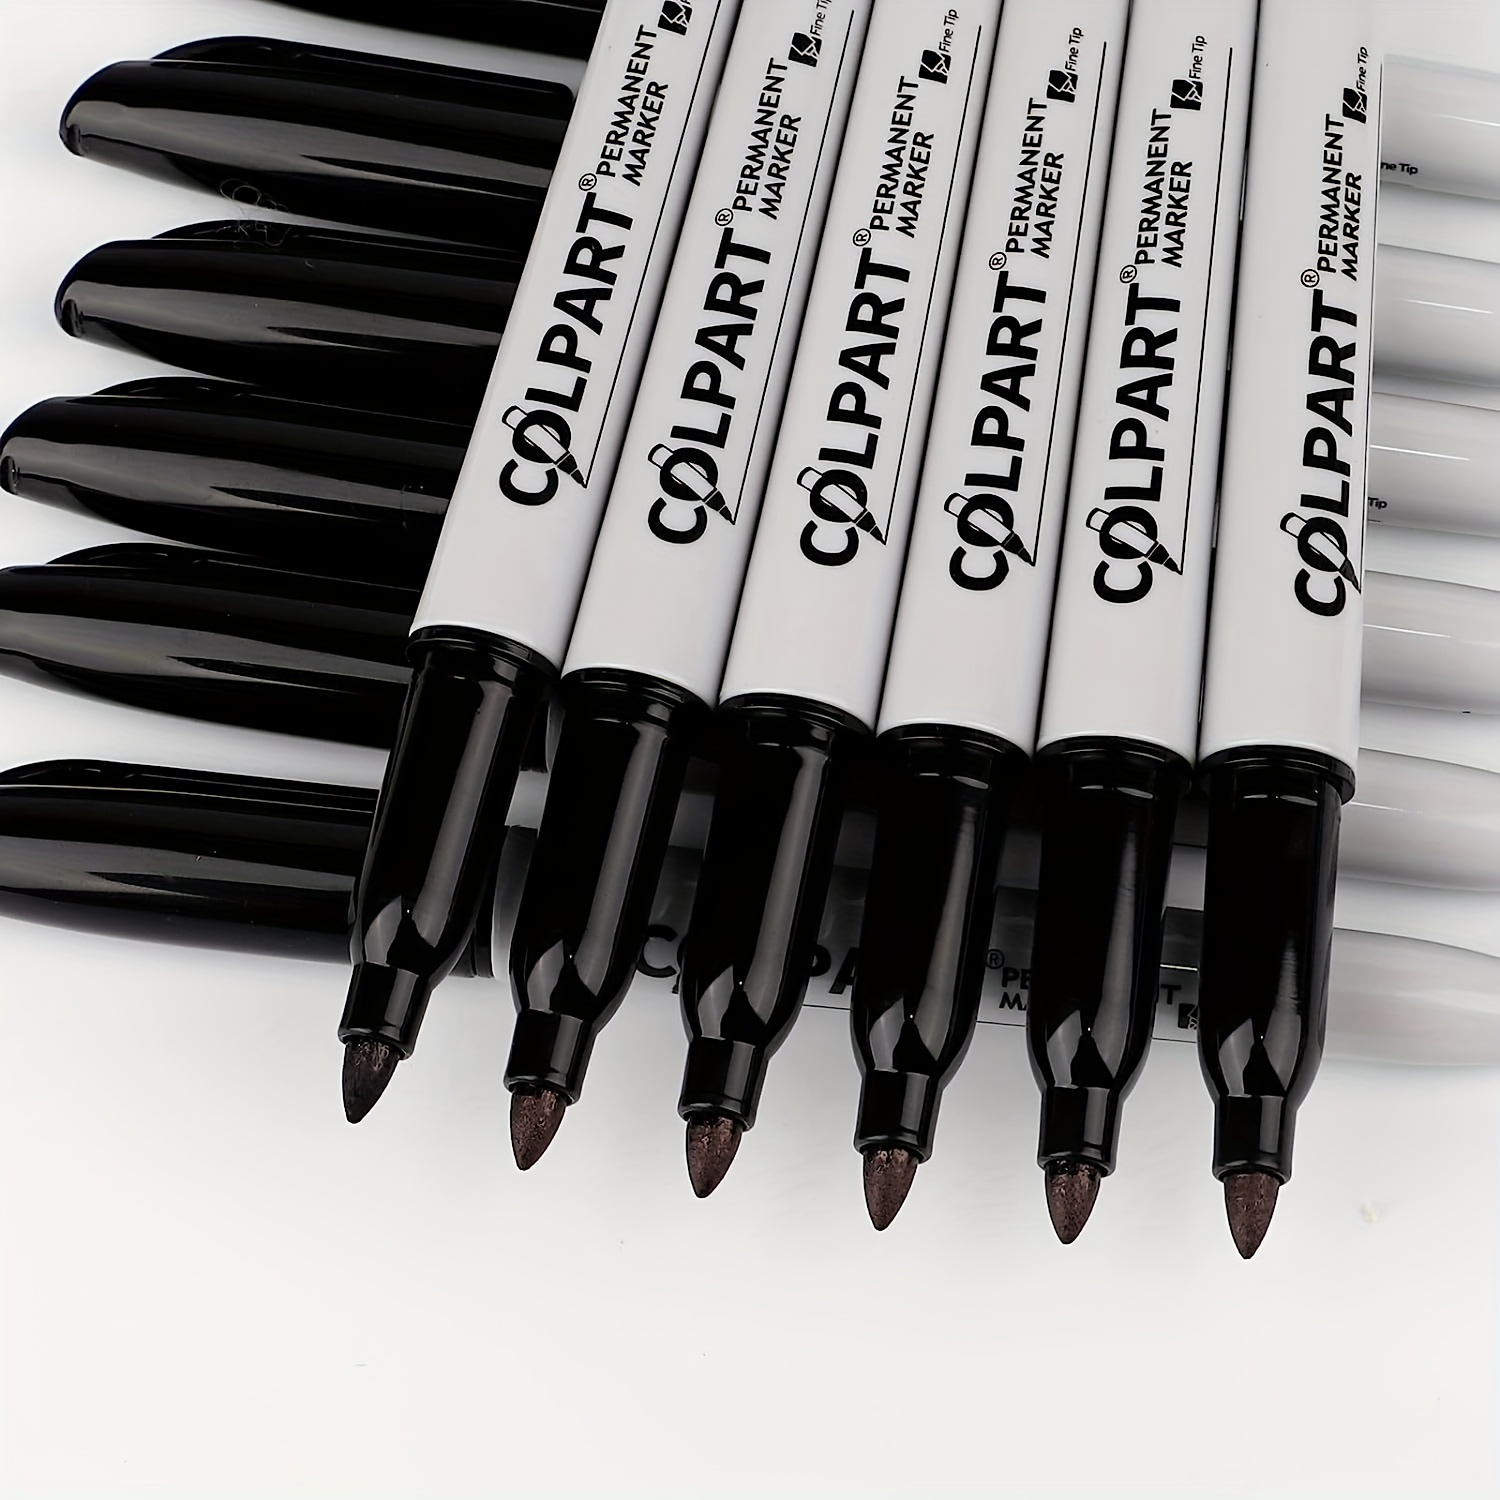 Touch School Marker Pen Kit 40 Colors Common Black